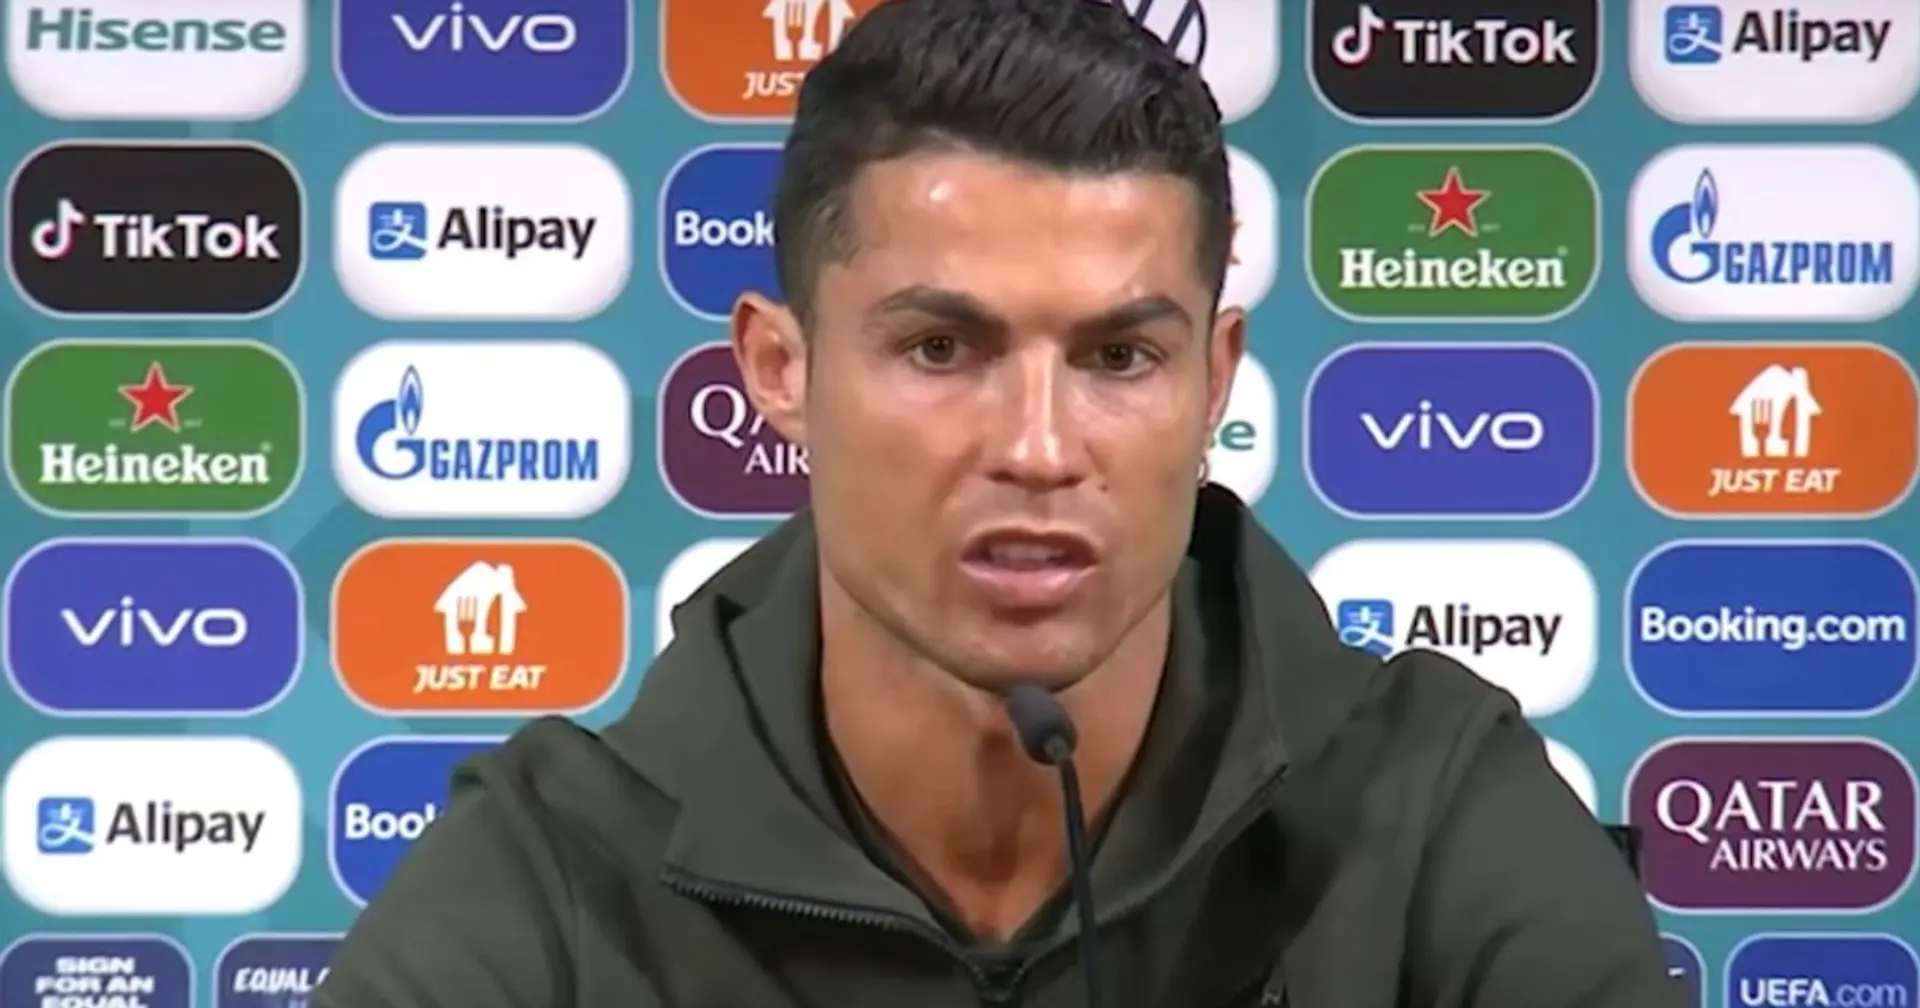 Ronaldo "veut quitter United" - voudriez-vous que Madrid le signe ? Pourquoi/Pourquoi pas?